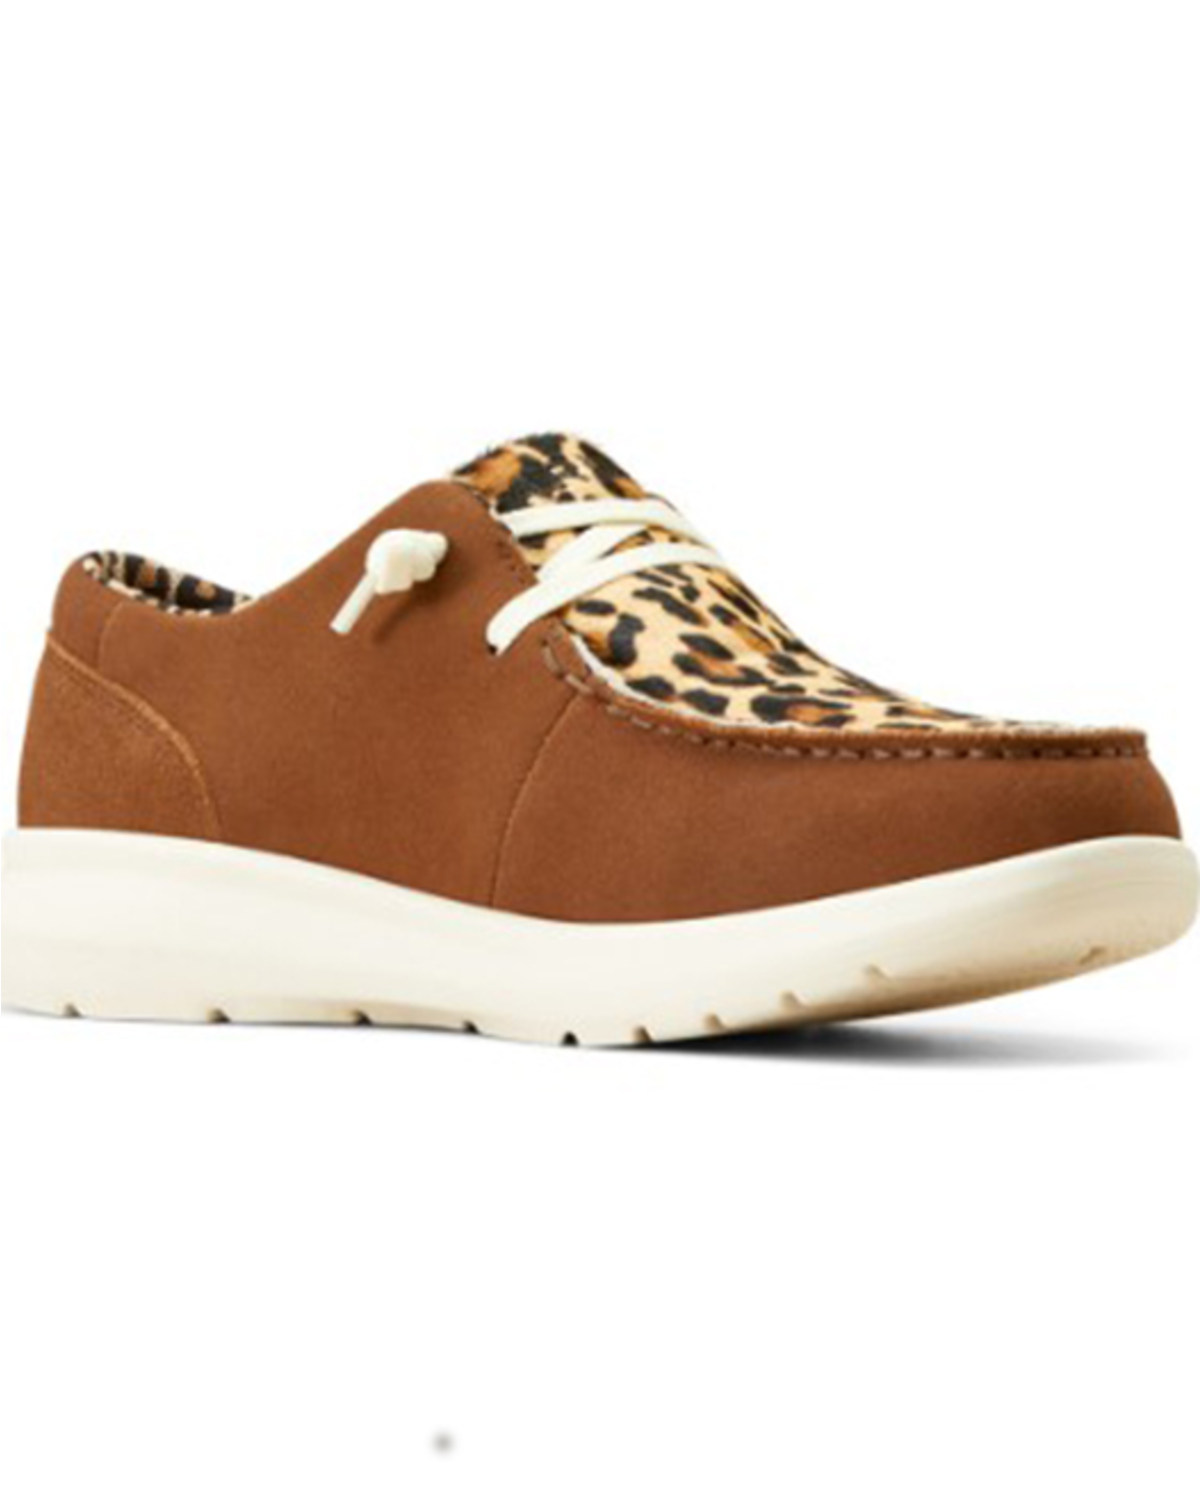 Ariat Women's Hilo Leopard Print Casual Shoes